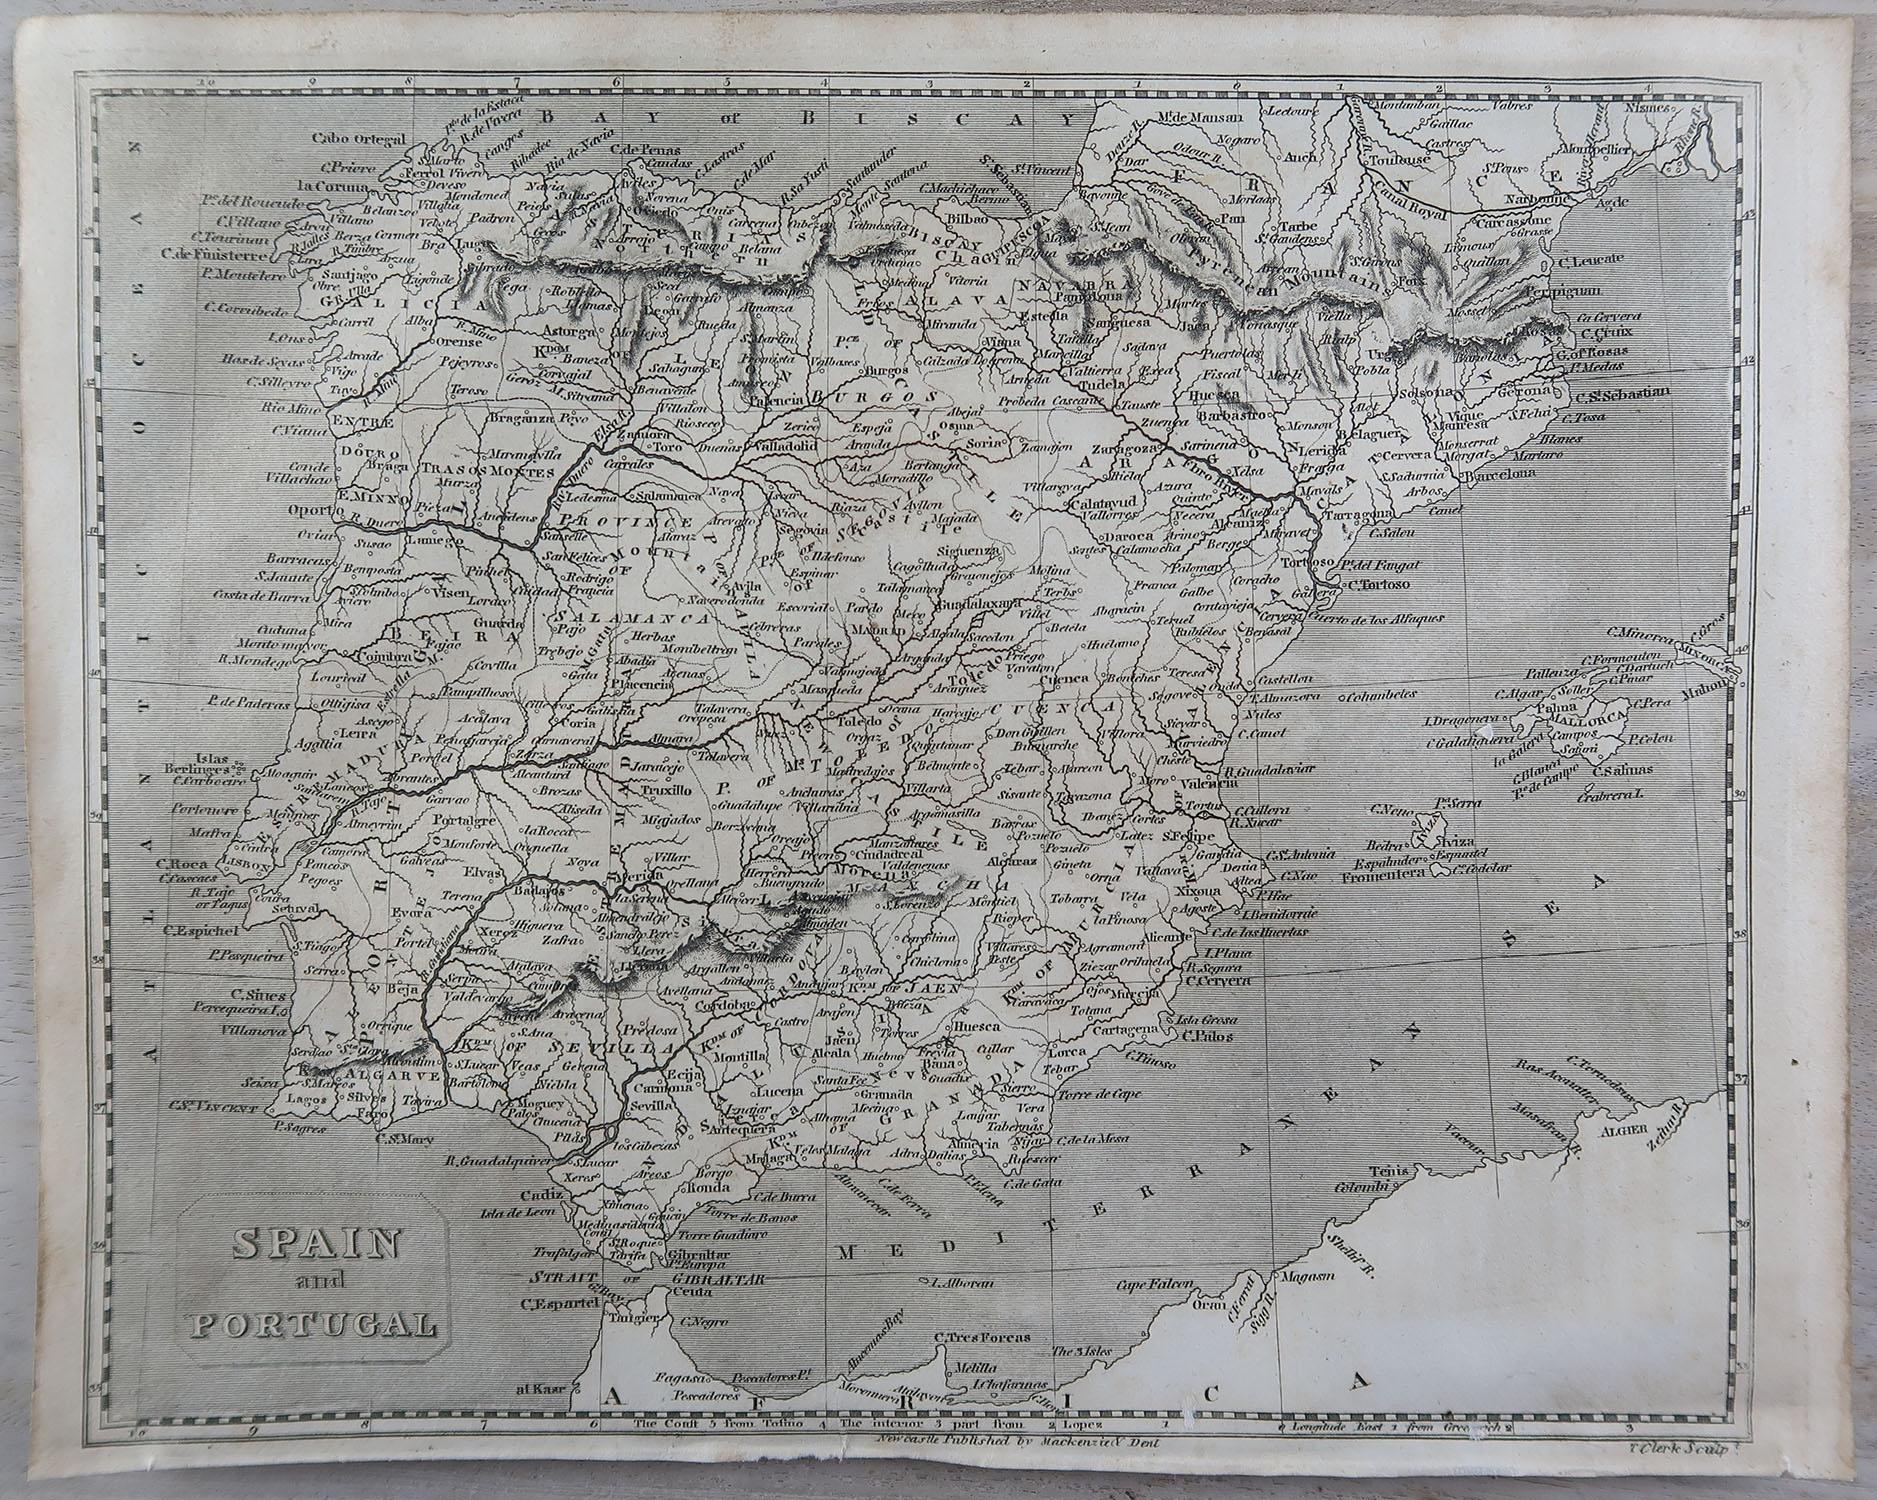 Grande carte de l'Espagne et du Portugal

Gravure sur cuivre

Dessiné et gravé par Thomas Clerk, Édimbourg.

Publié par Mackenzie et Dent, 1817

Non encadré.